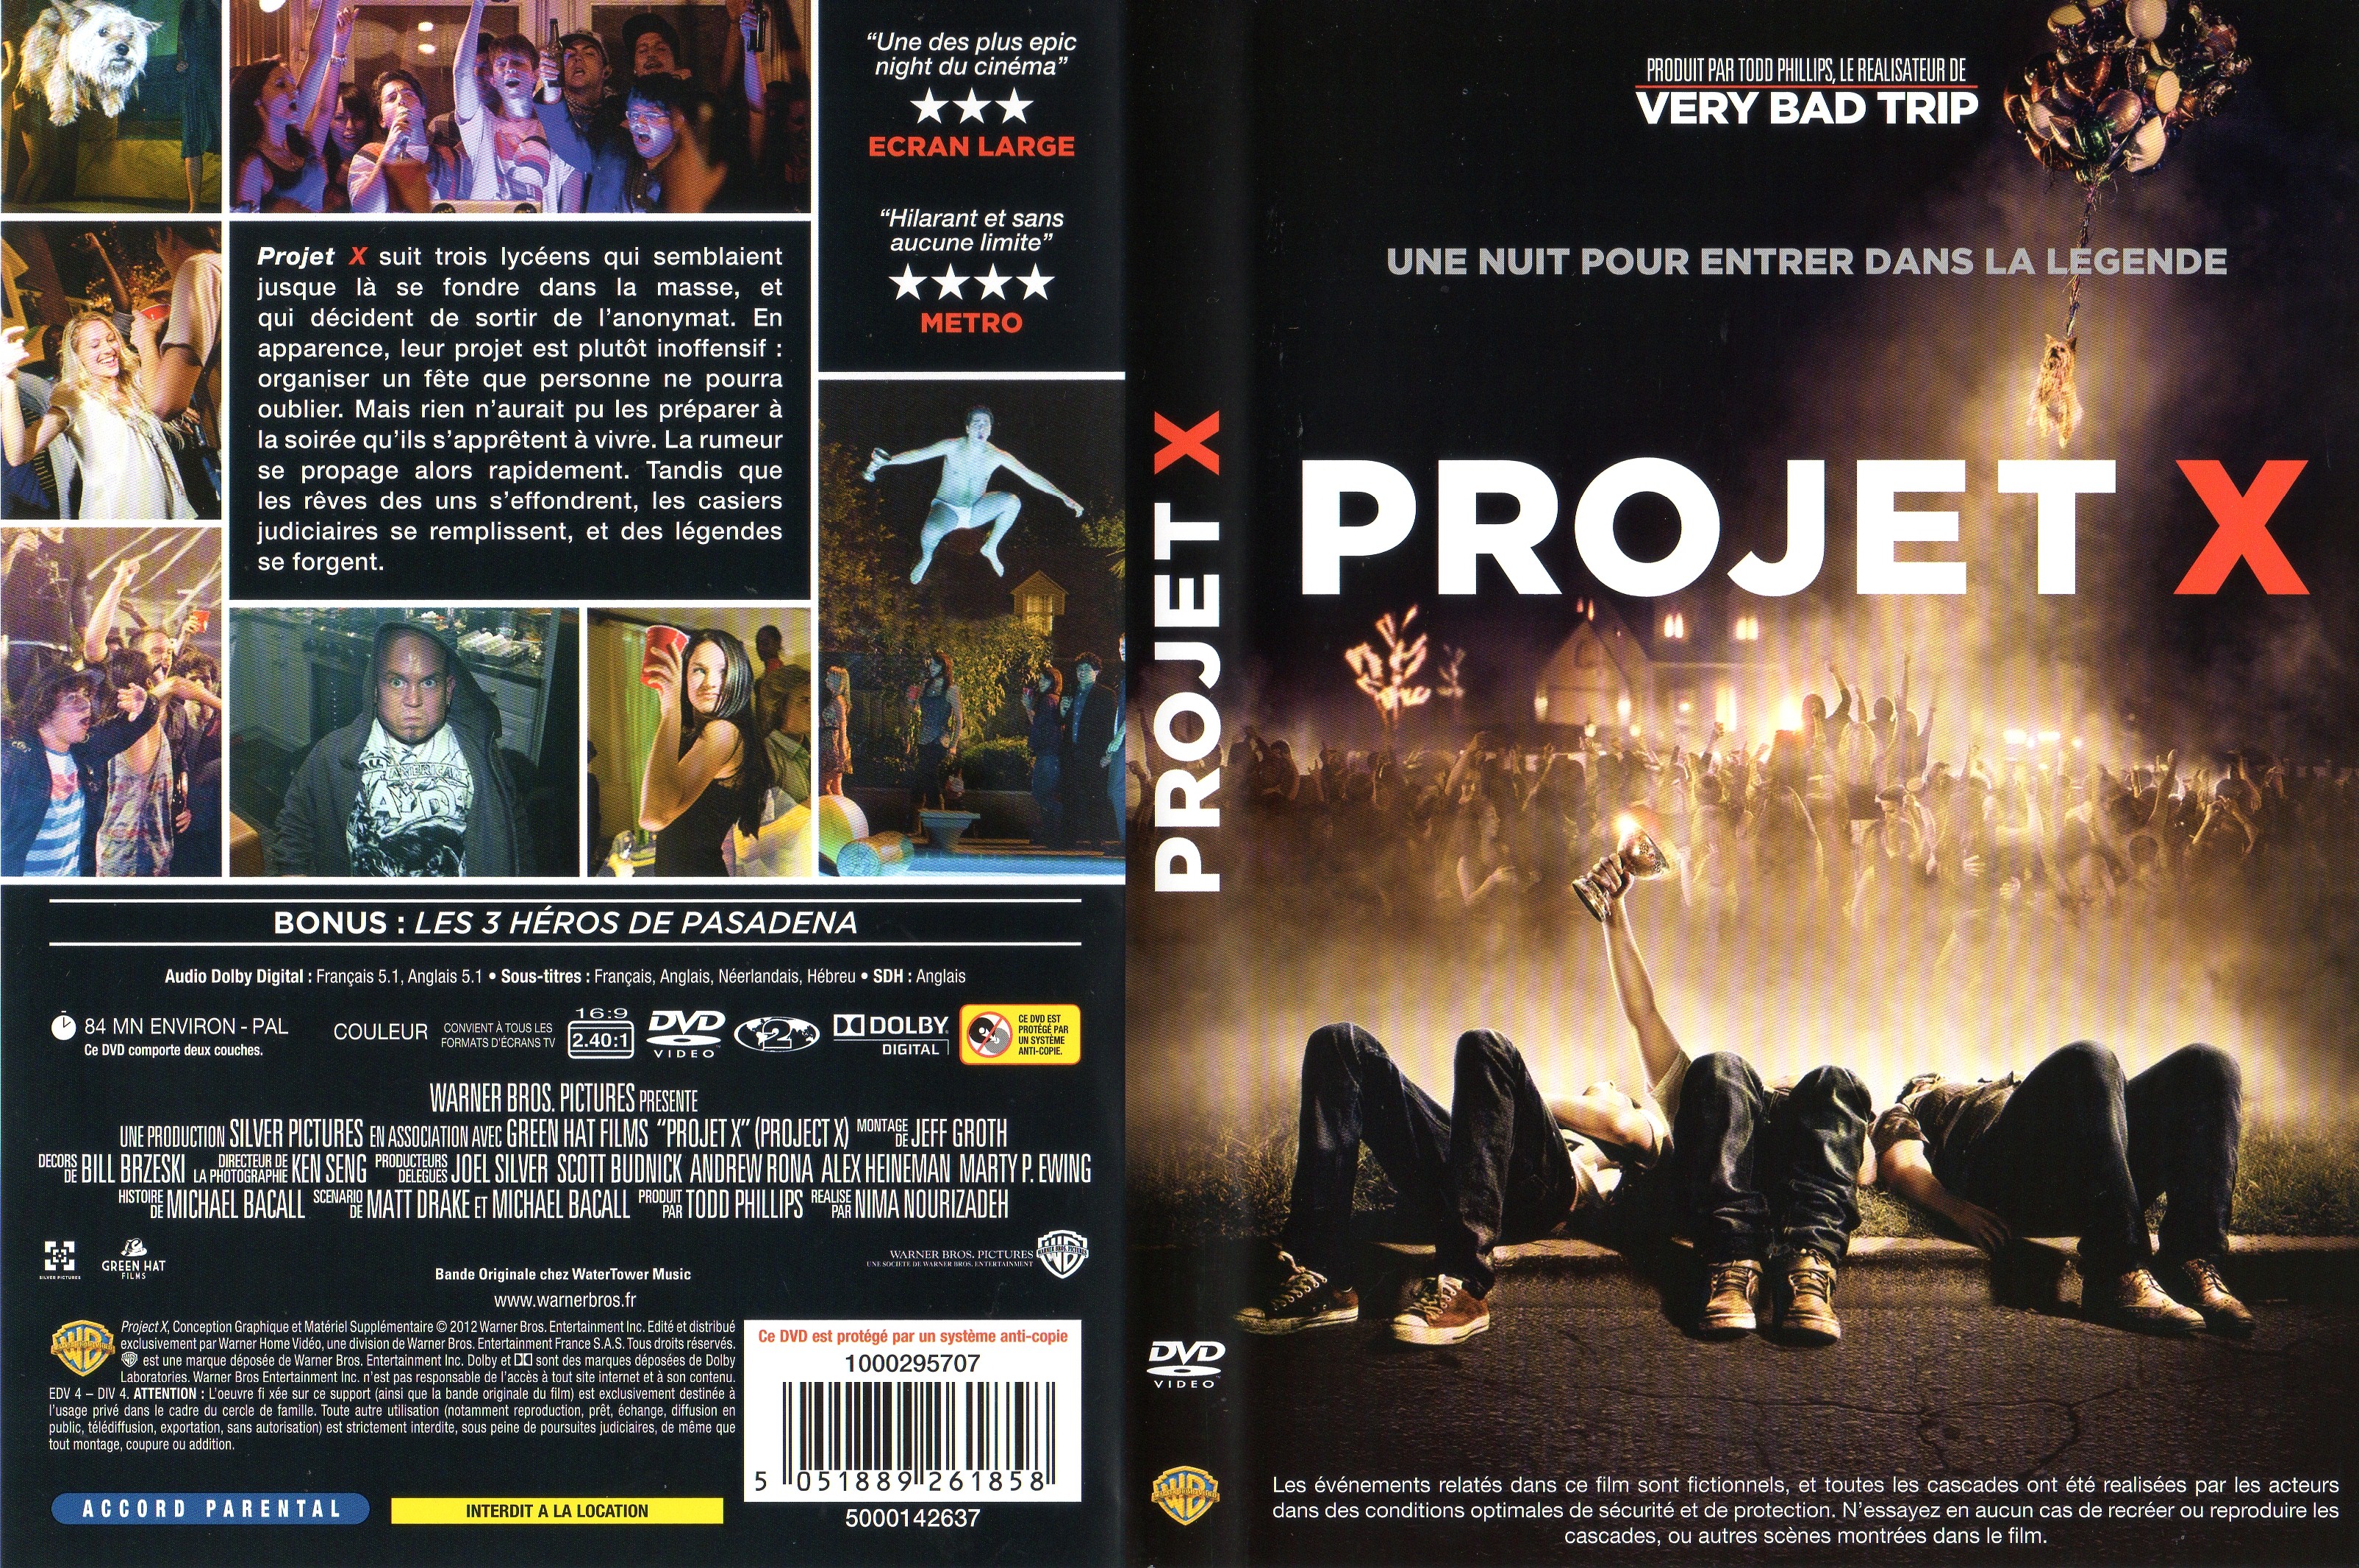 Jaquette Dvd De Projet X Cinéma Passion